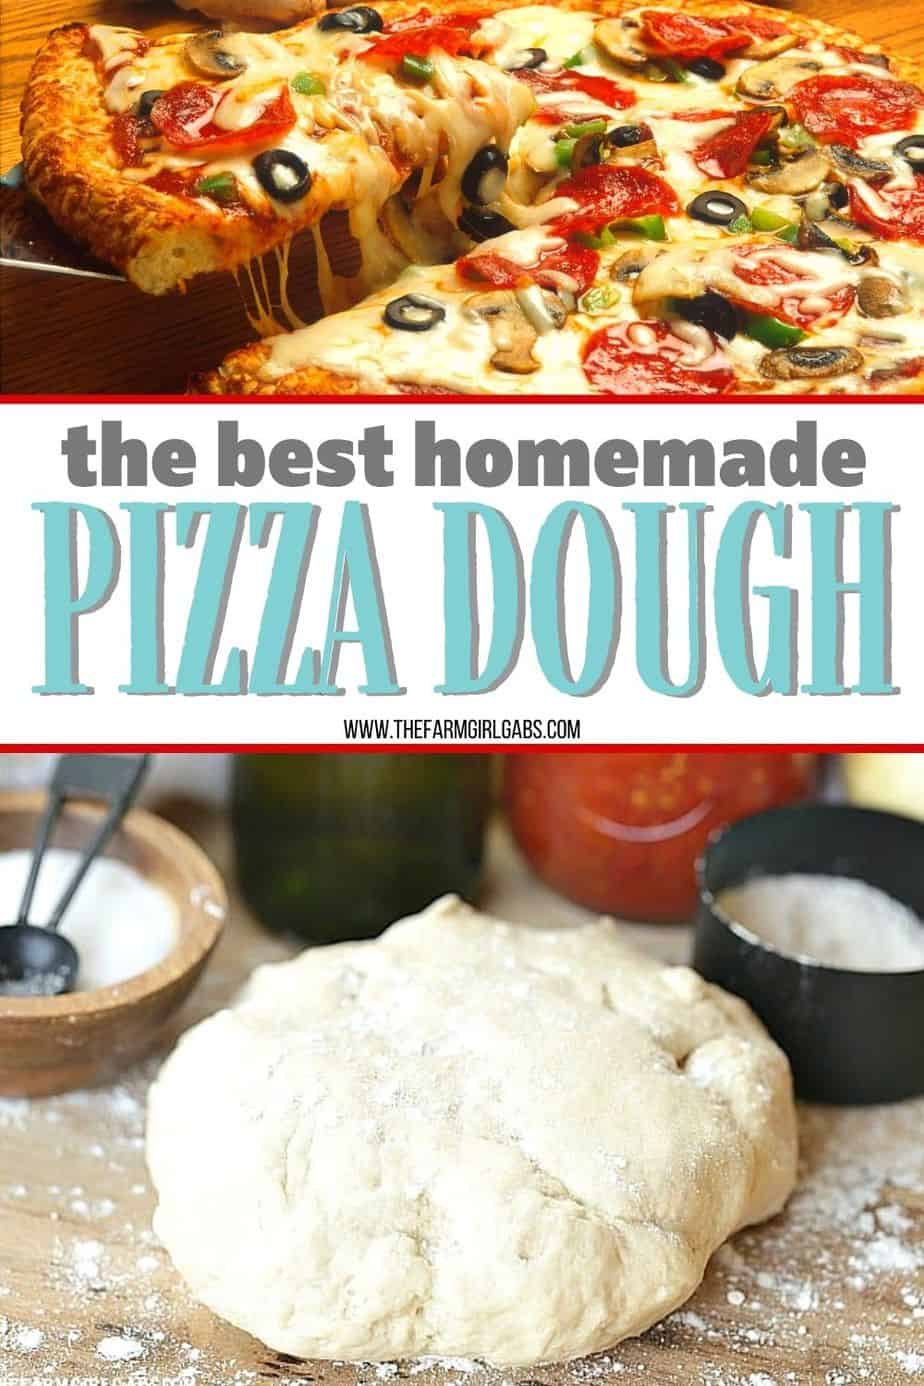 Homemade Pizza Dough Recipe - The Farm Girl Gabs®